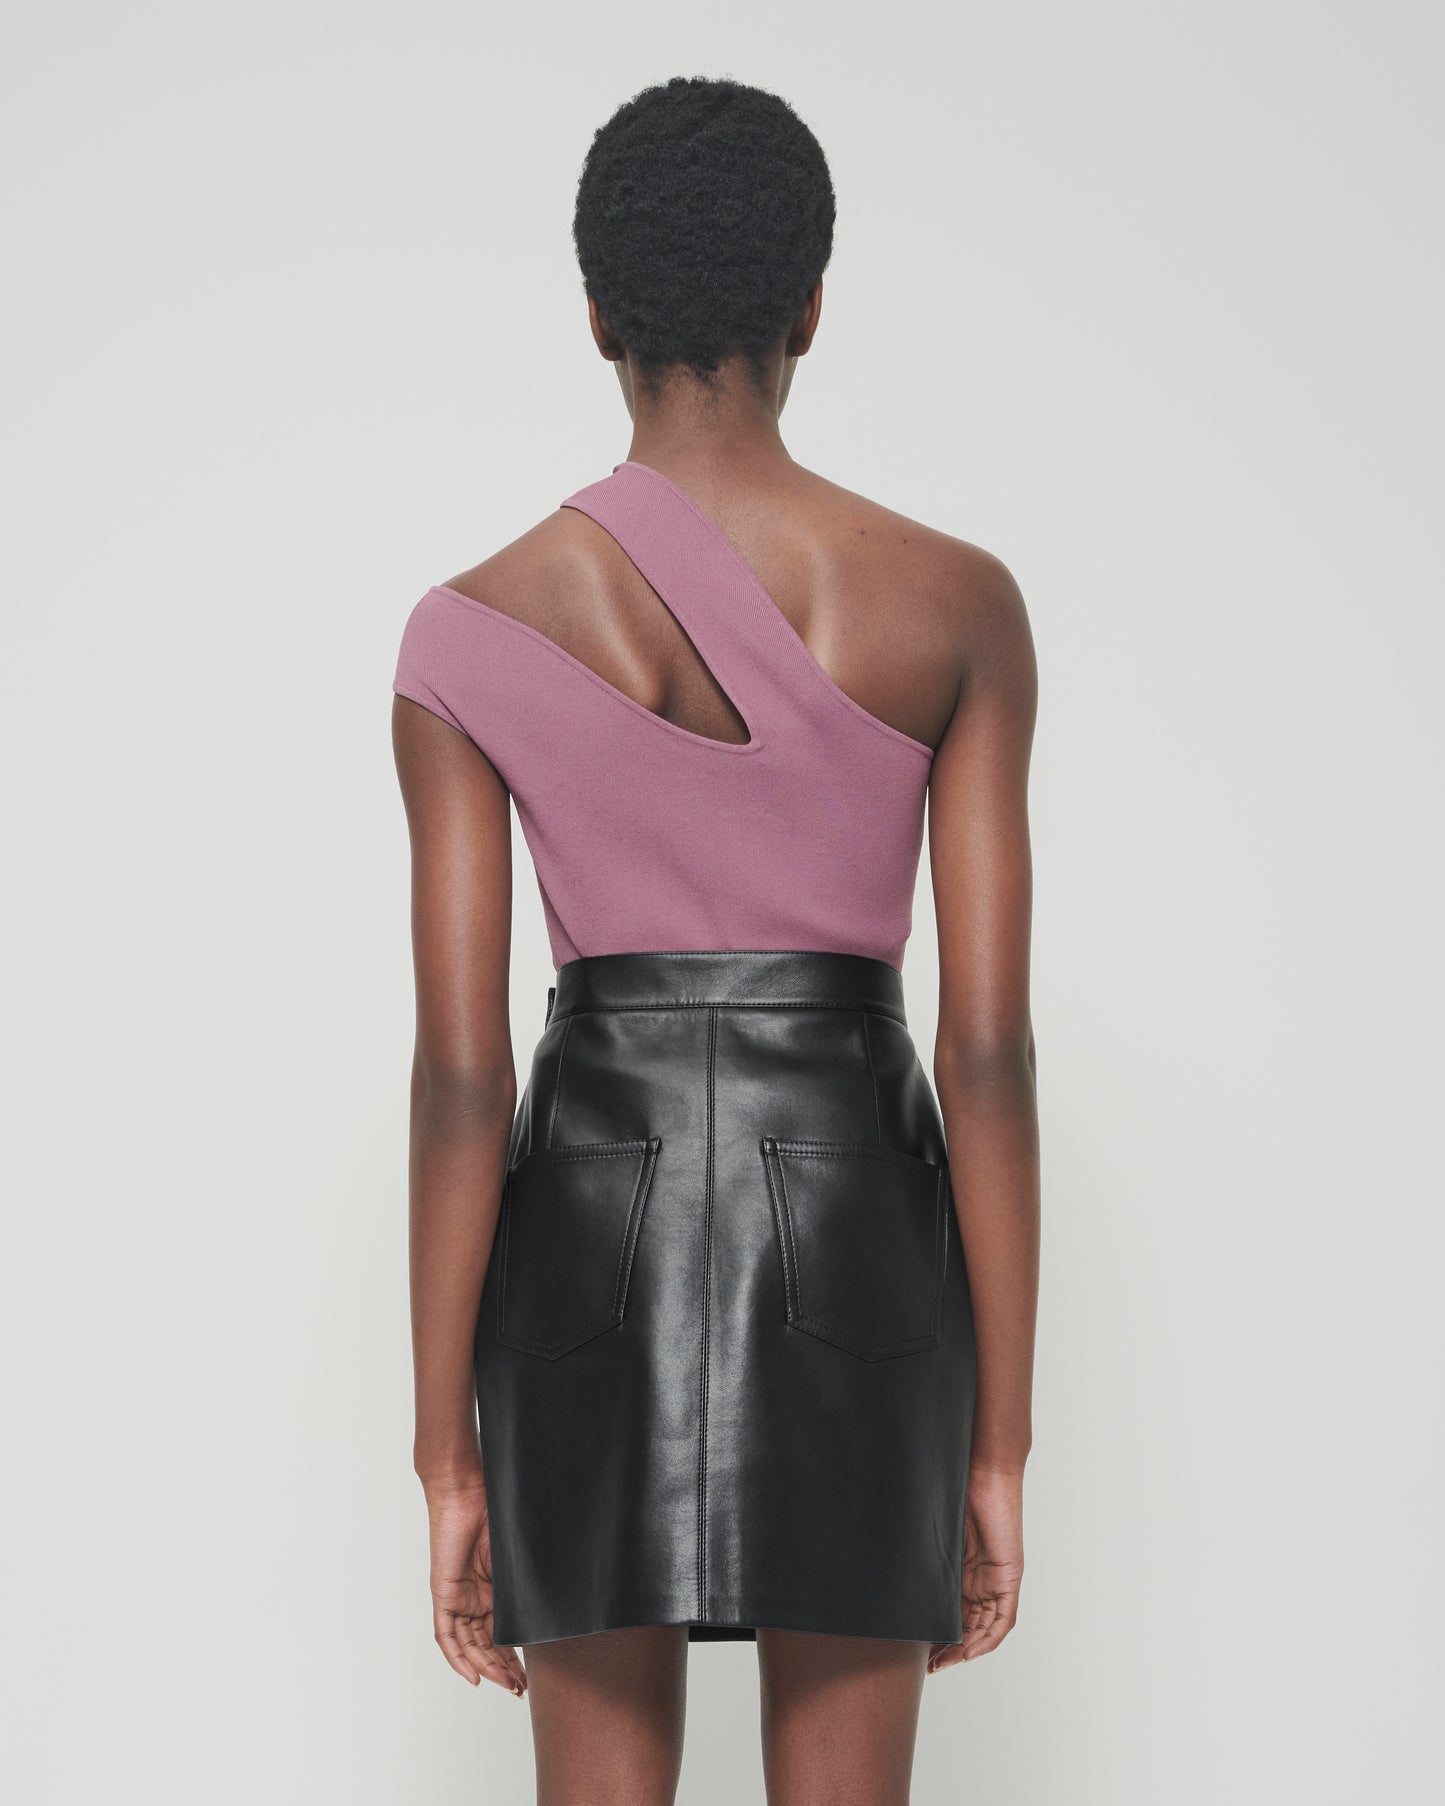 Gima - Sale Regenerated Leather Mini Skirt - Black